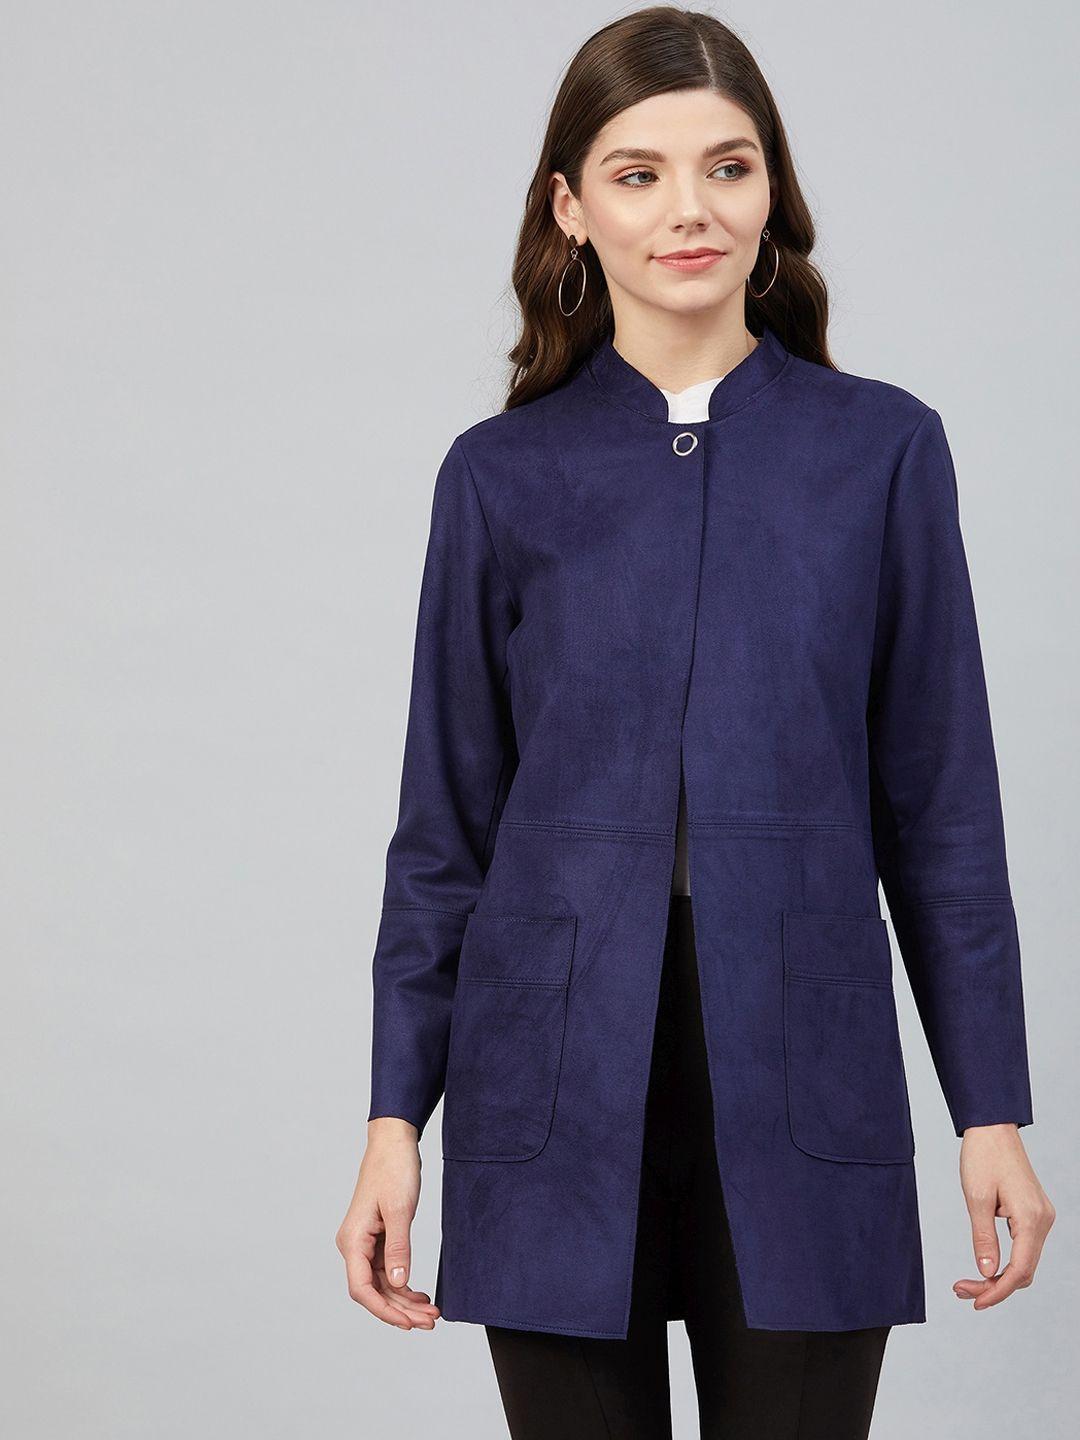 carlton london women blue suede longline tailored jacket